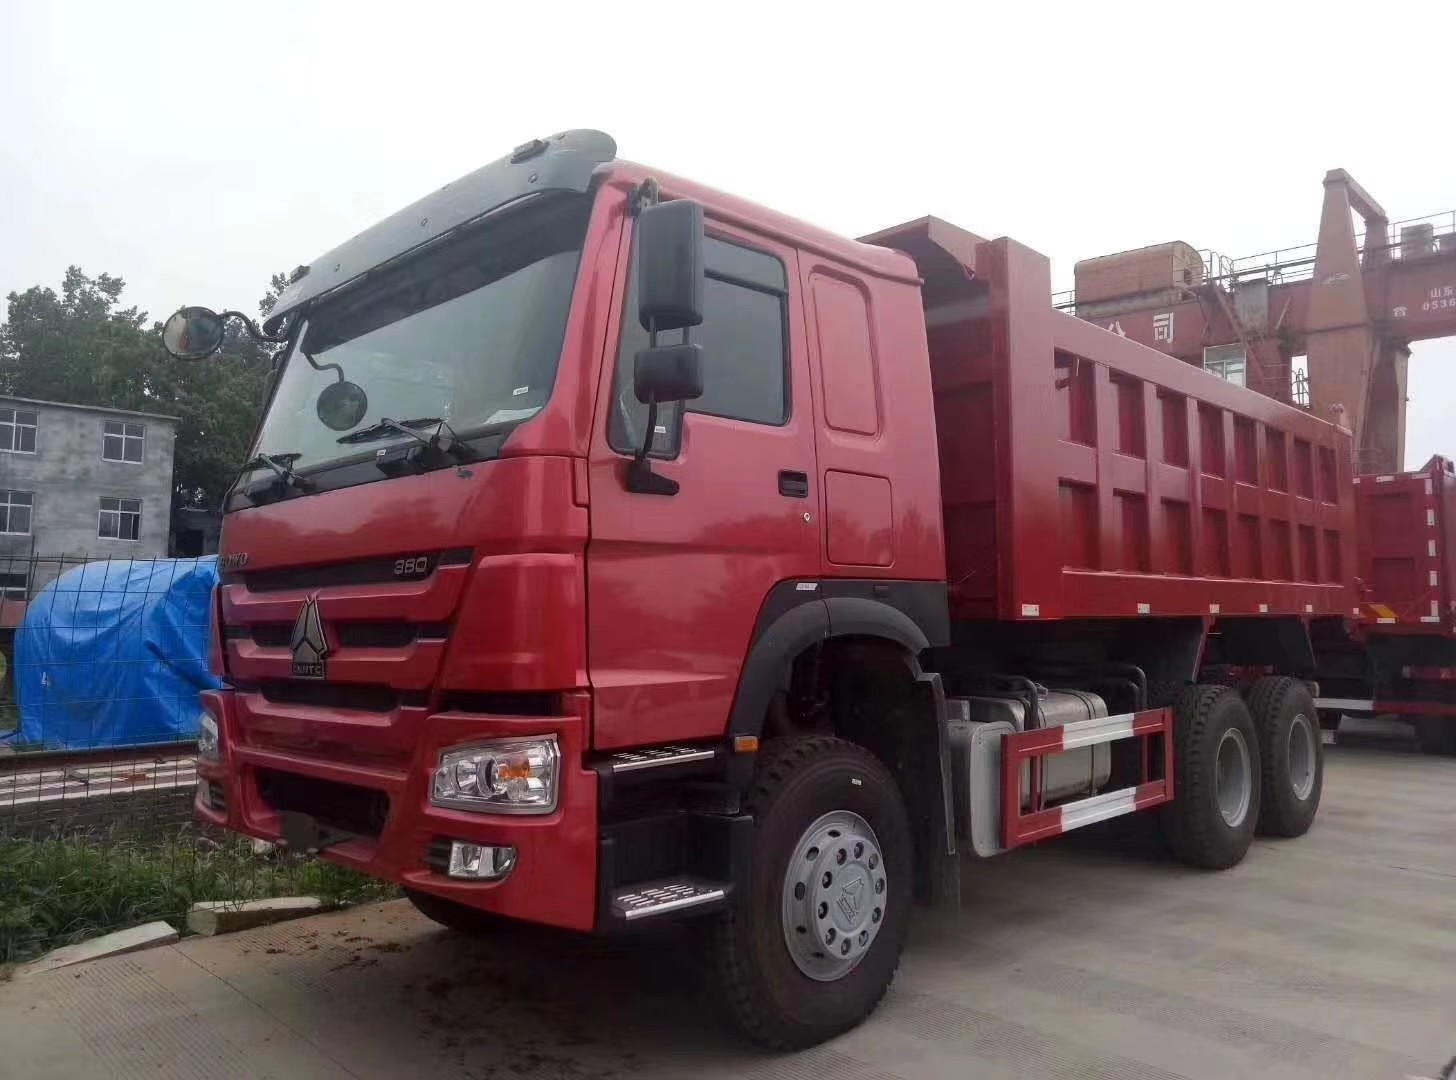 استاندارد استاندارد انتشار یورو 2 کامیون سرخ Red Heavy Duty Truck با فرمان ZF8118